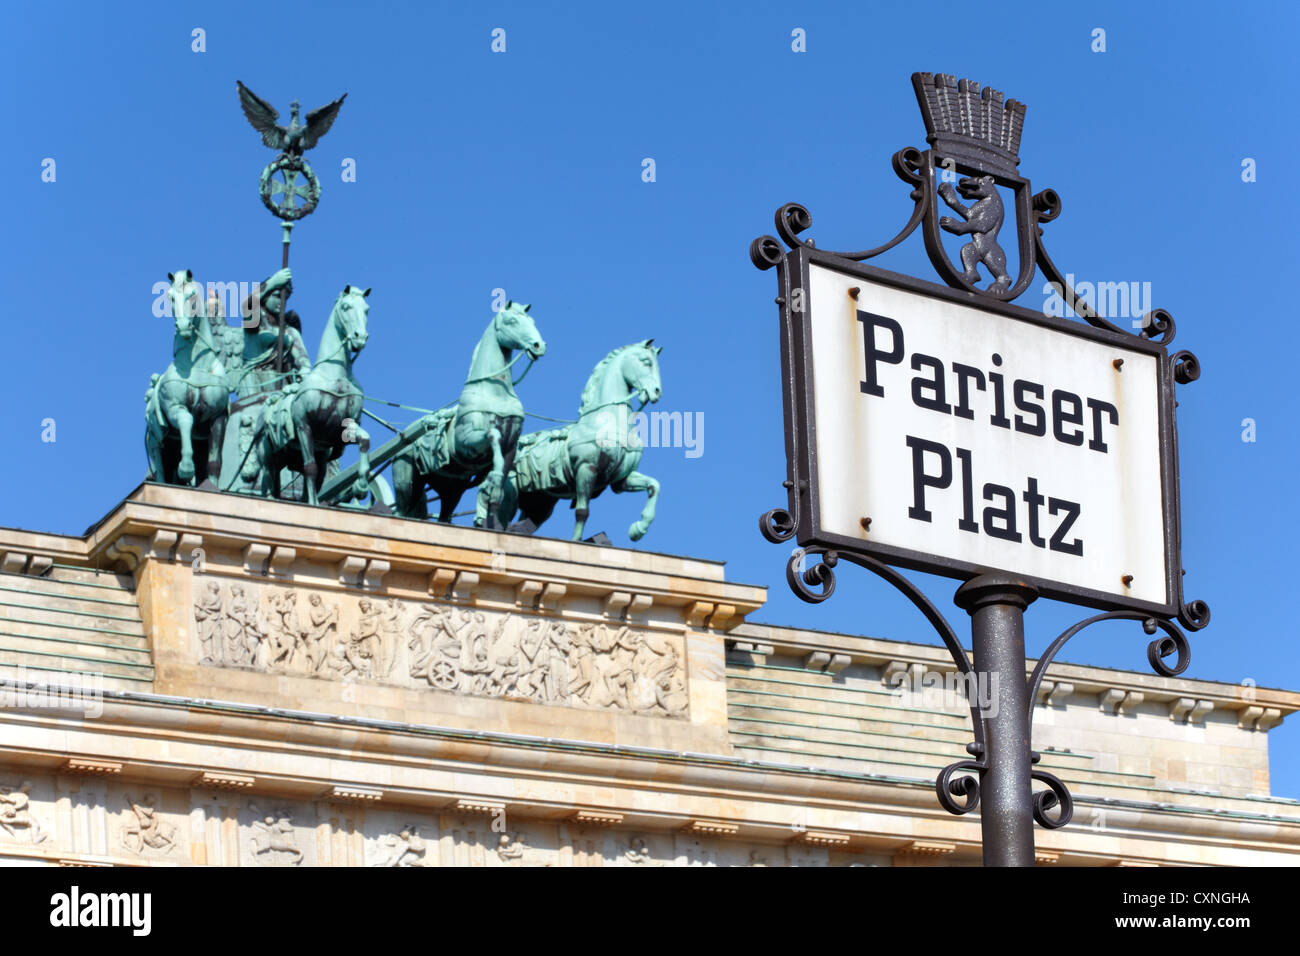 Pariser Platz sign, Brandenburg gate, Berlin Stock Photo